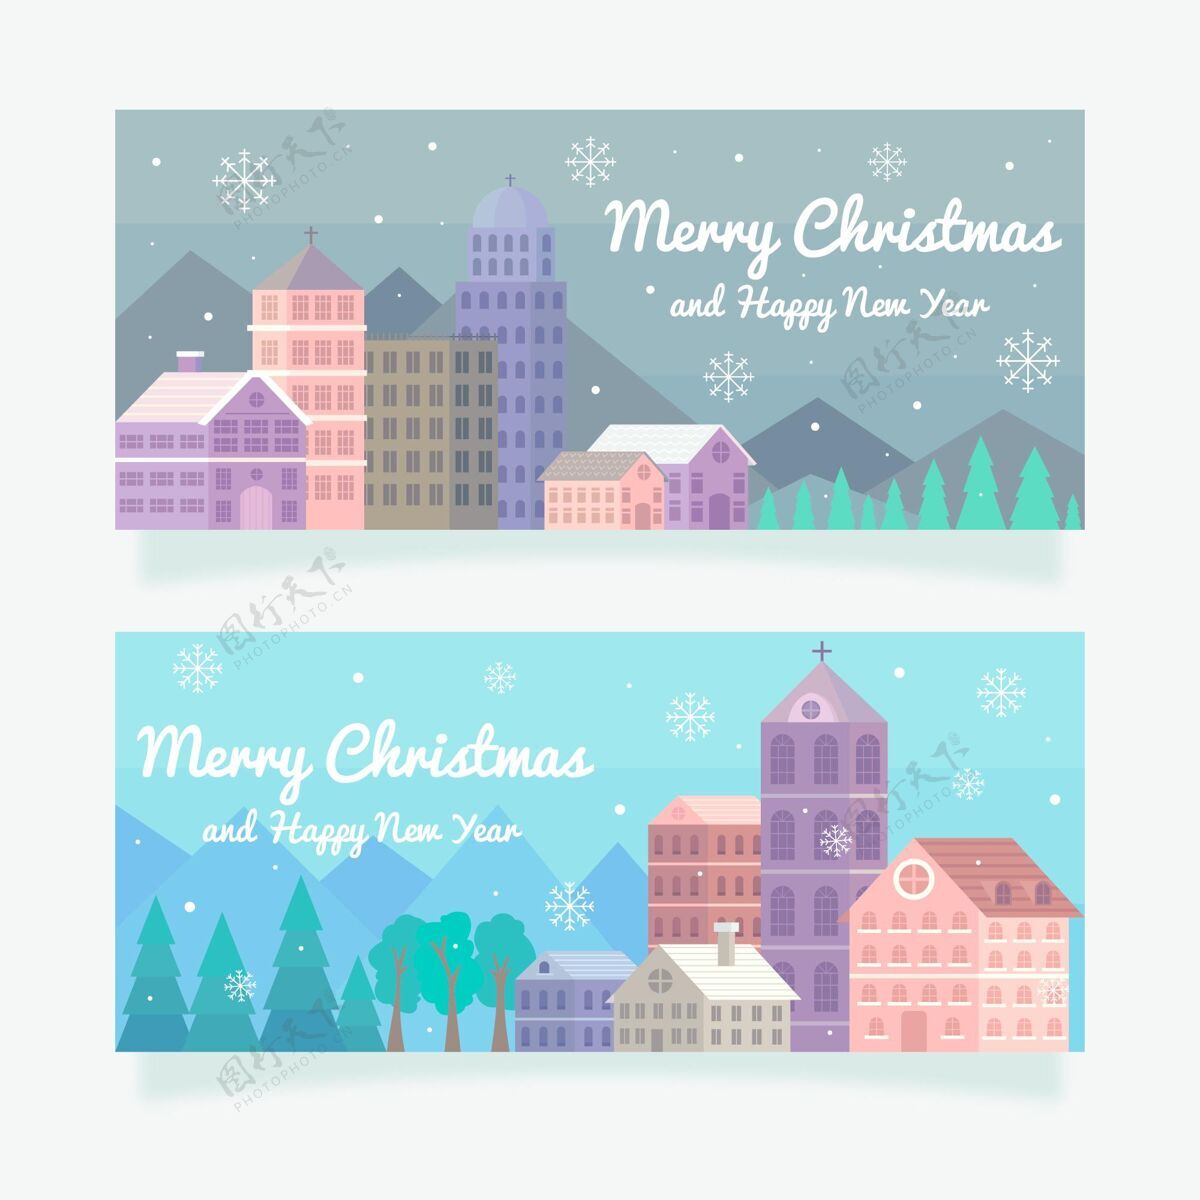 快乐平面设计圣诞小镇横幅模板横幅城镇平面设计